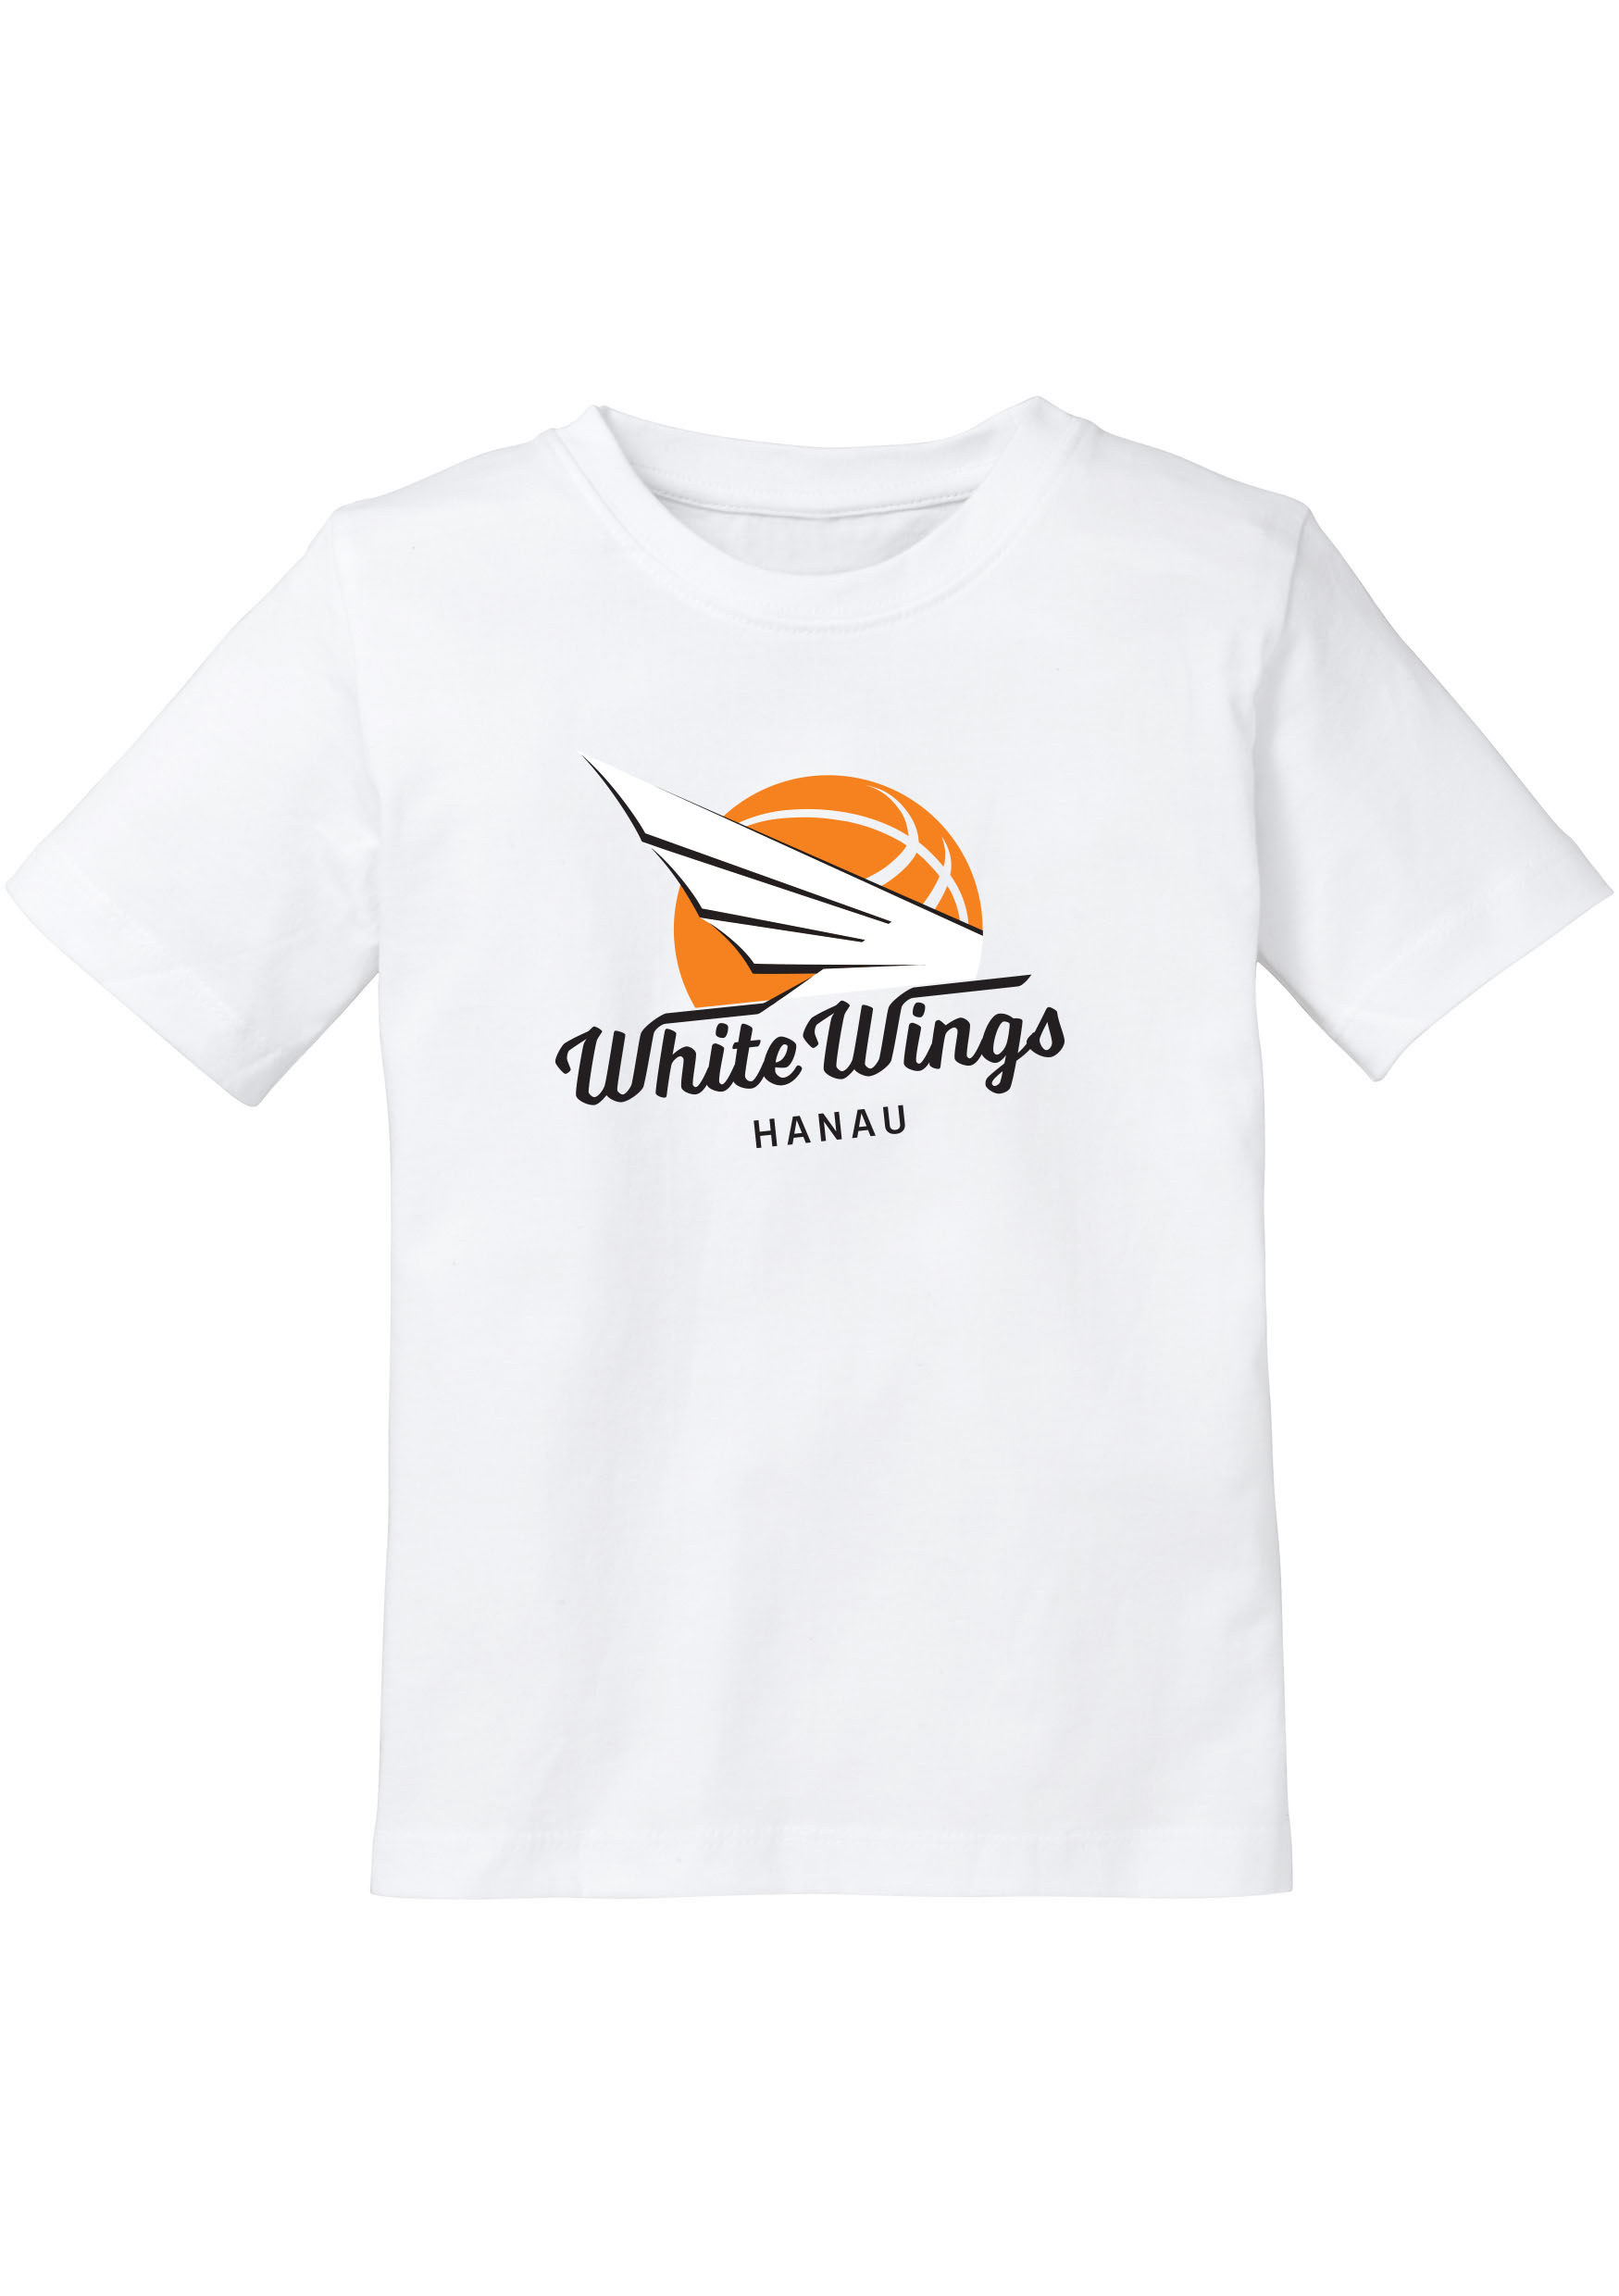 White Wings Shirt Kids